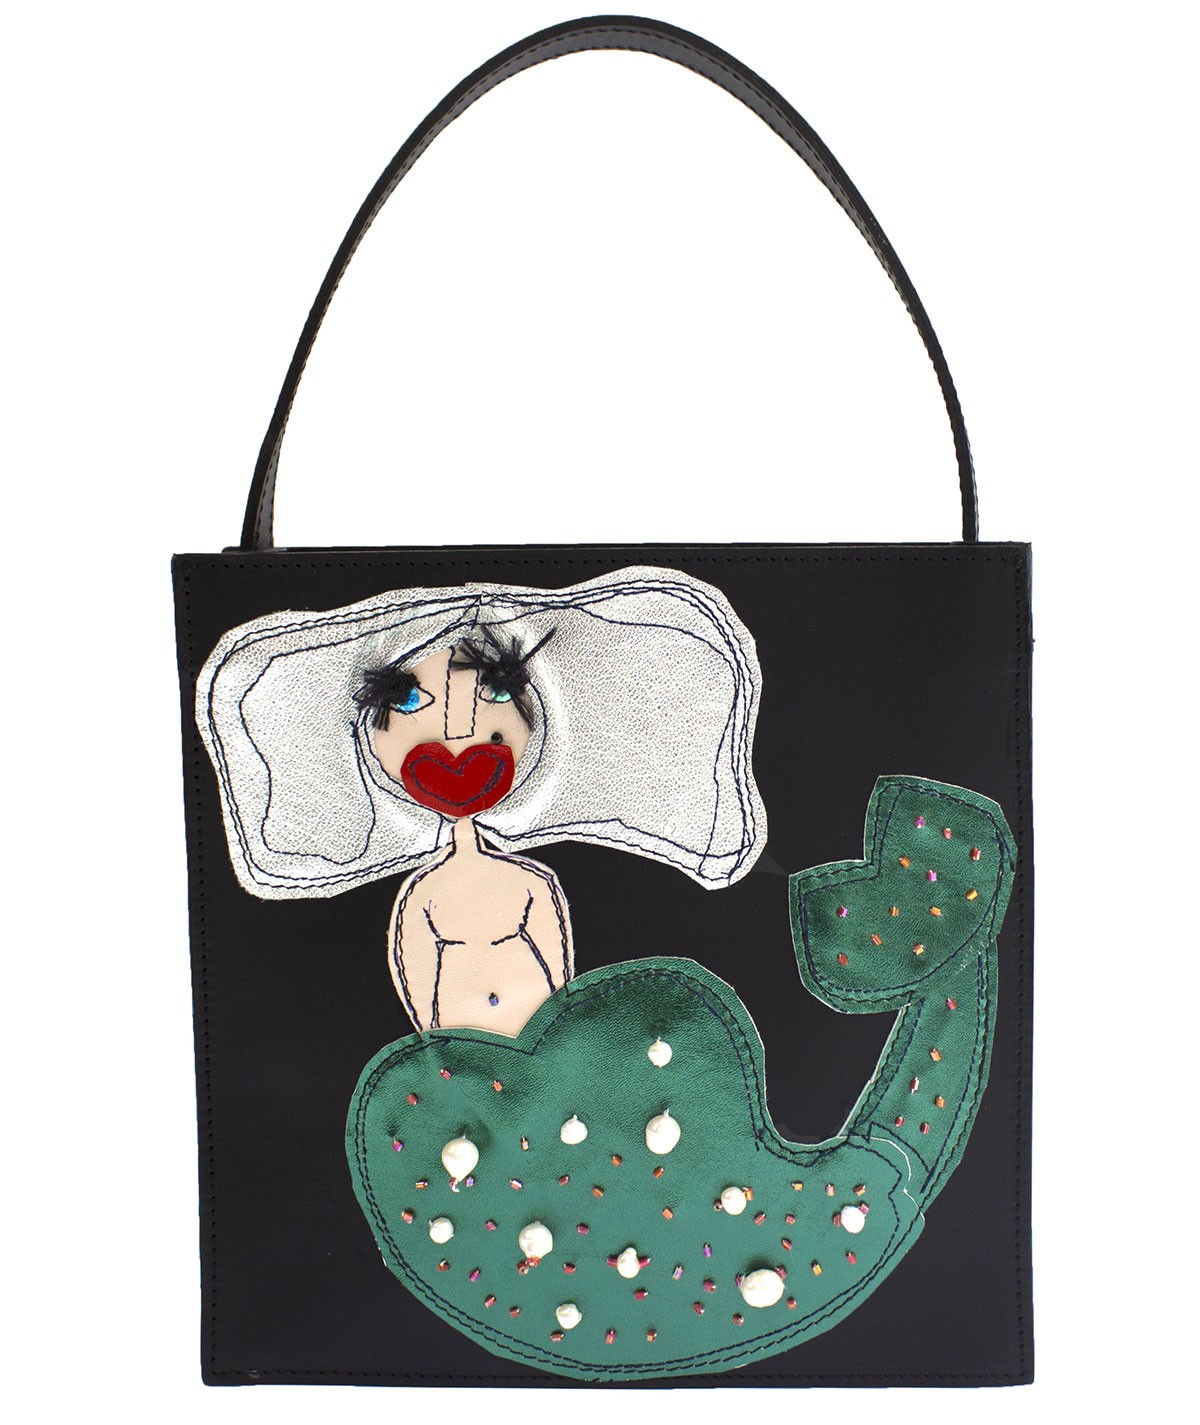 Mermaid - leather handbag